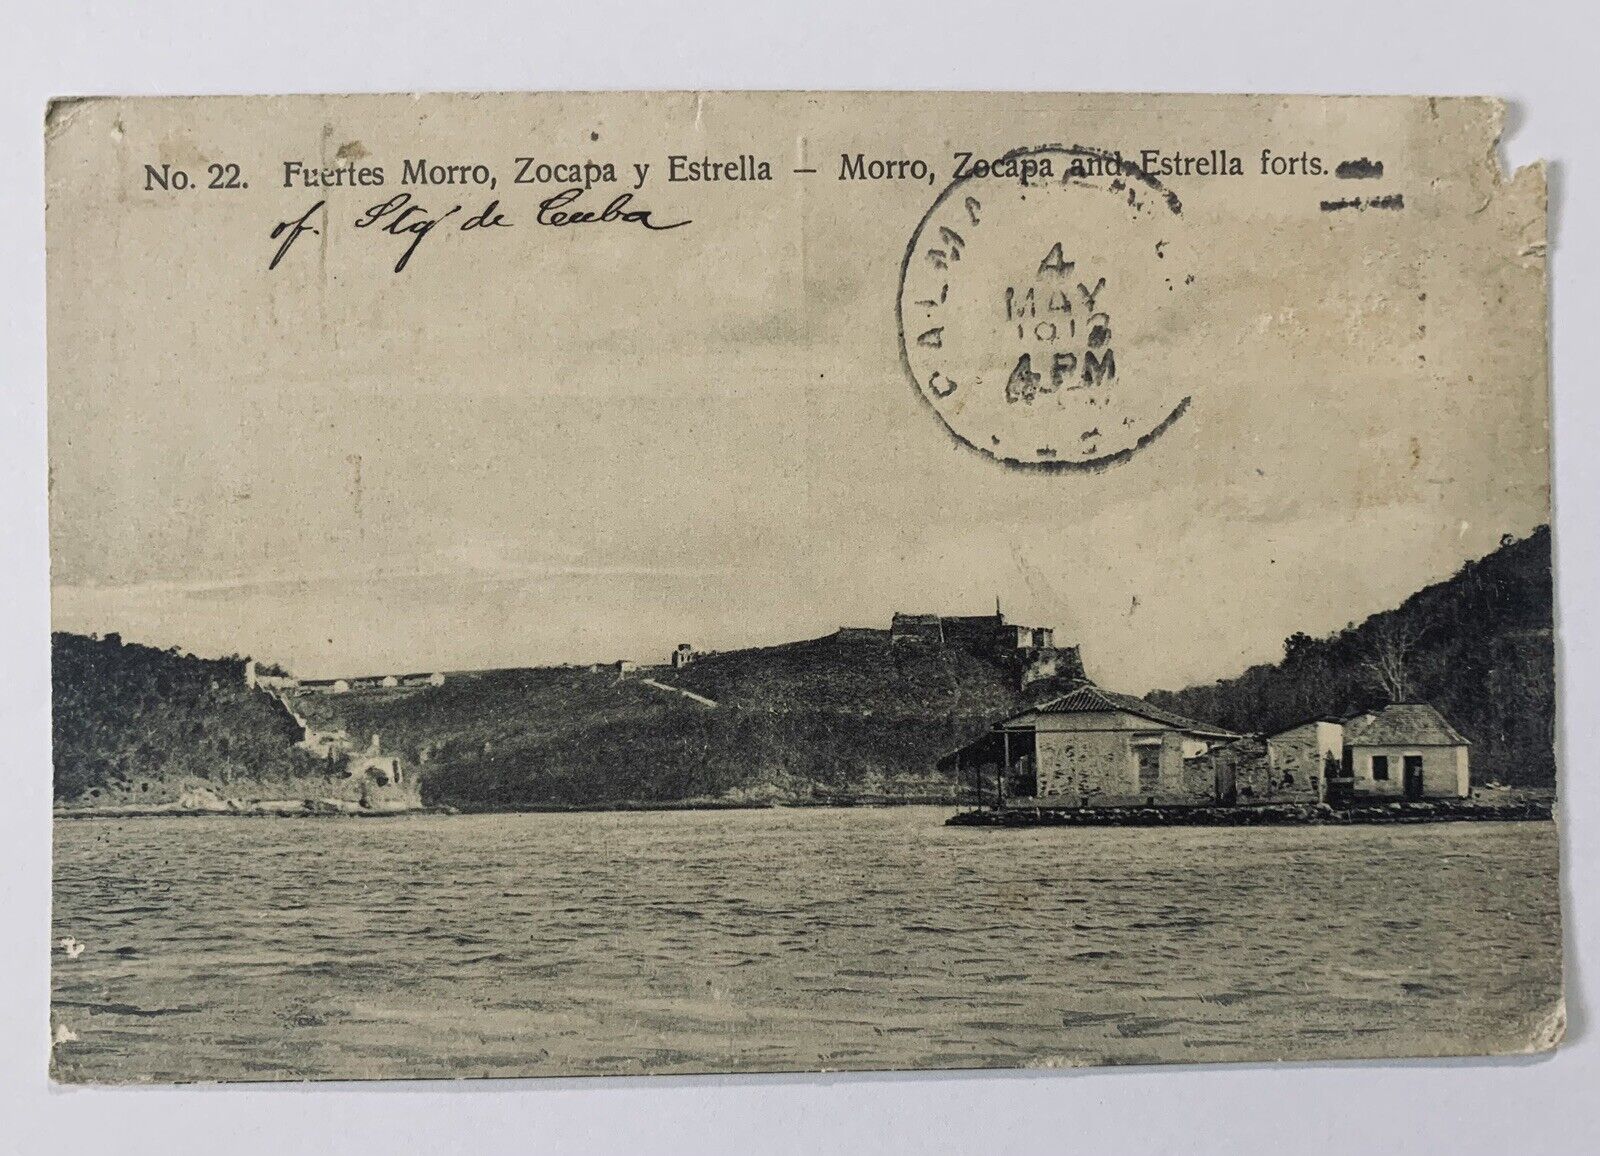 Fuertes Morro, Zocapa y Estrella Santiago de Cuba, PM 1913 Vintage Postcard